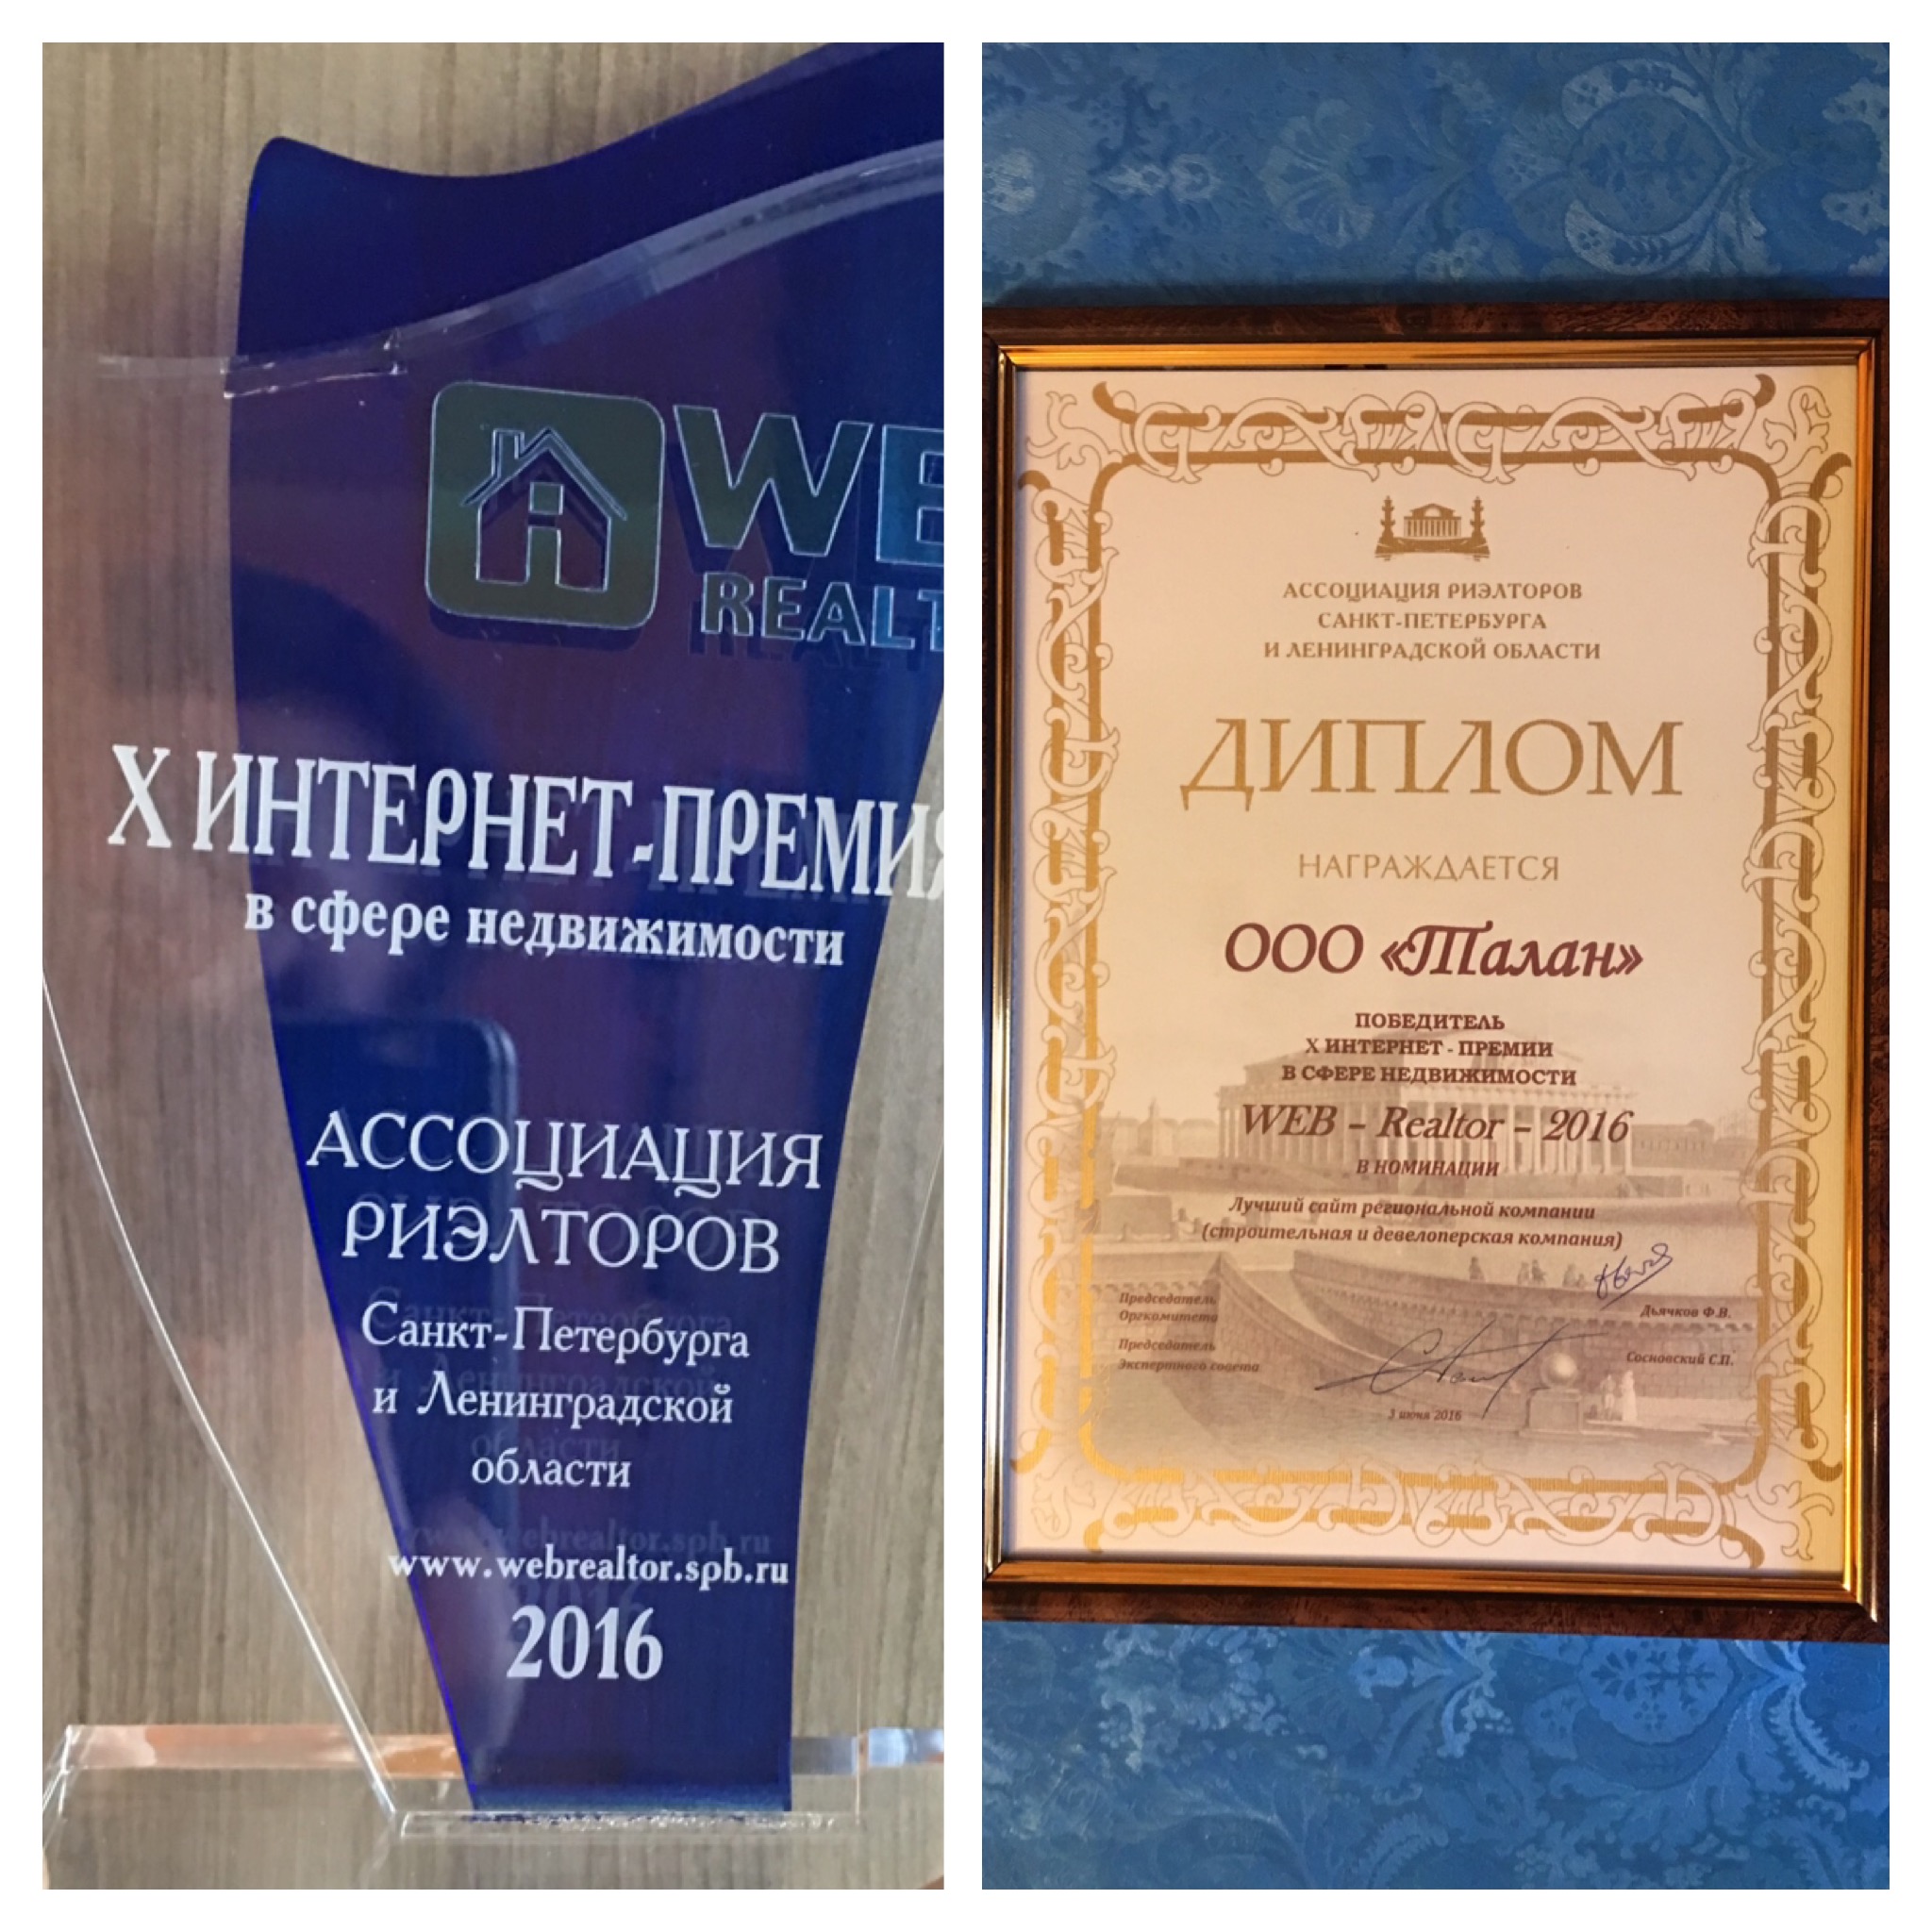 Сайт компании «Талан» победил во всероссийской интернет-премии WEB-Realtor-2016